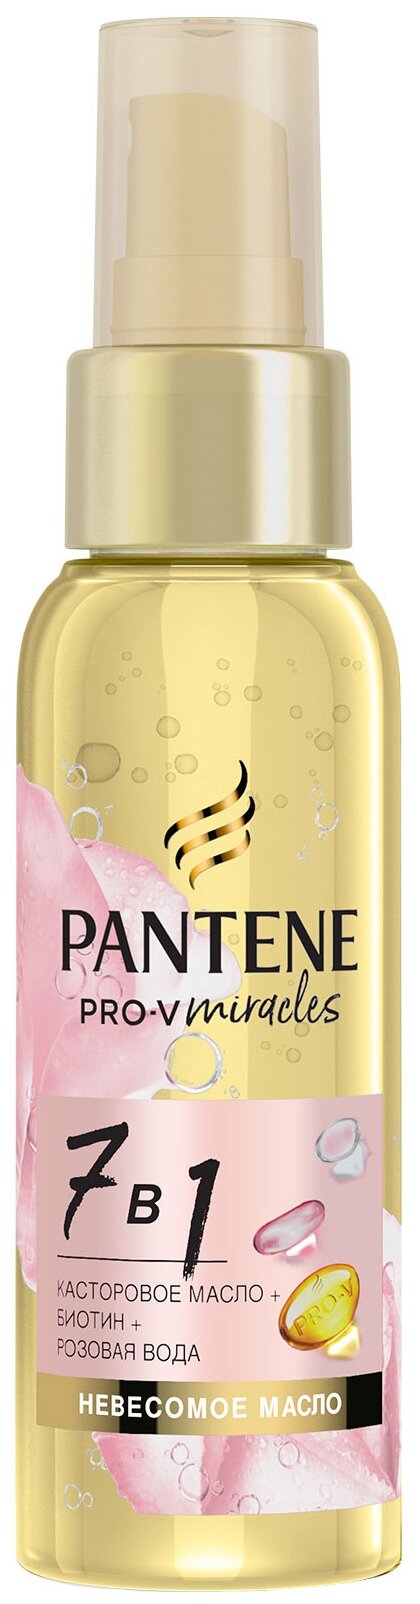 Pantene Pro-V Miracles масло для волос 7 в 1 для ослабленных волос и секущихся кончиков, 96.31 г, 100 мл, аэрозоль